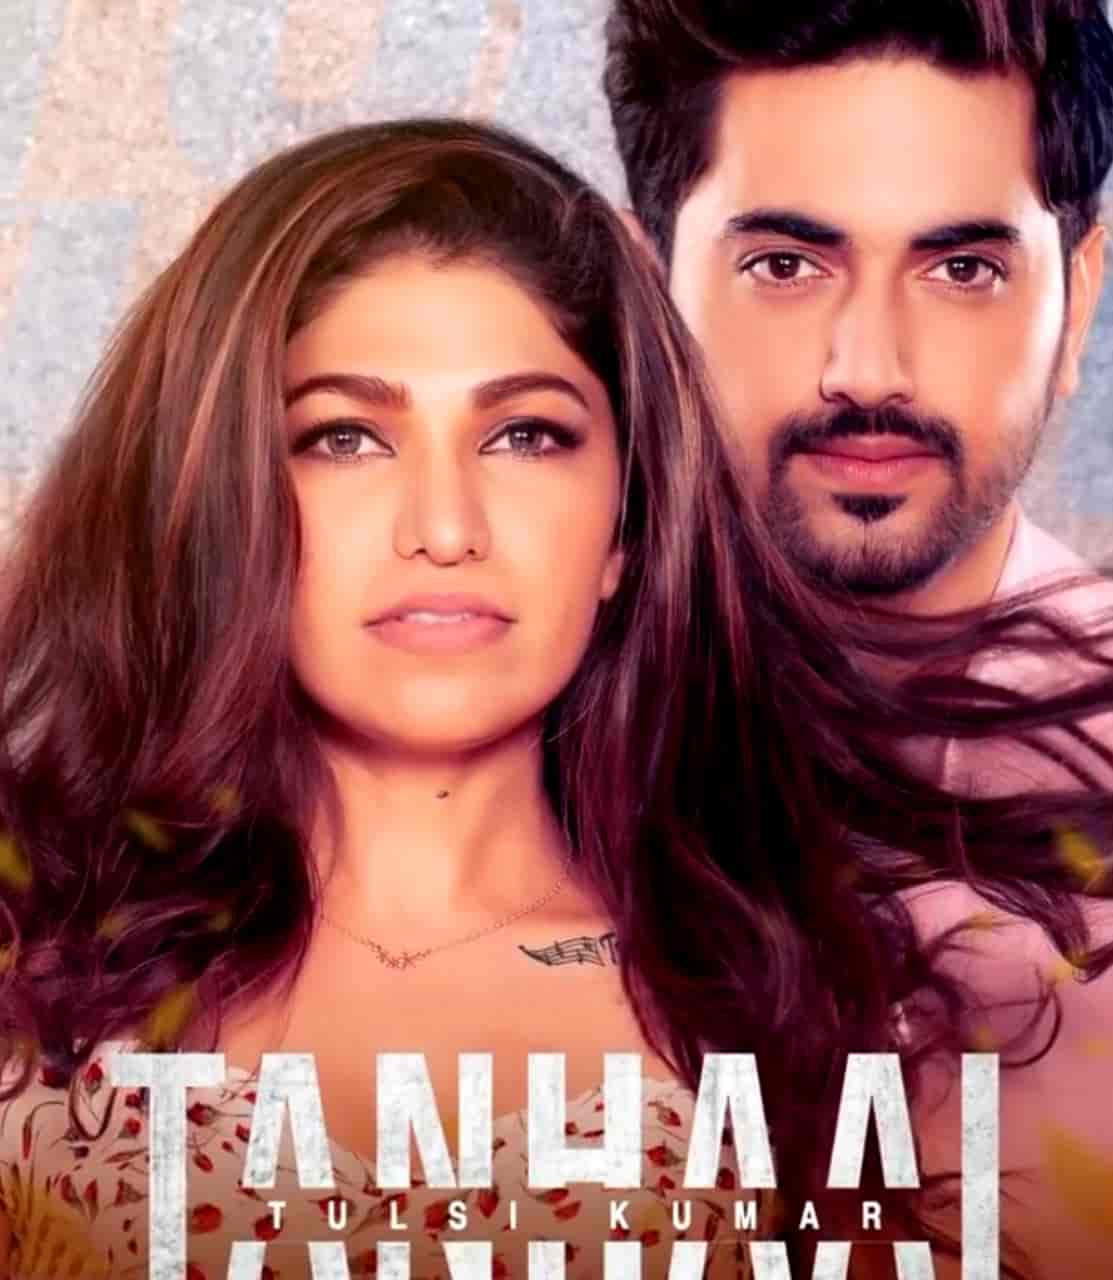 Tanhaai Sad Hindi Song Image Features Tulsi Kumar and Zain Imam